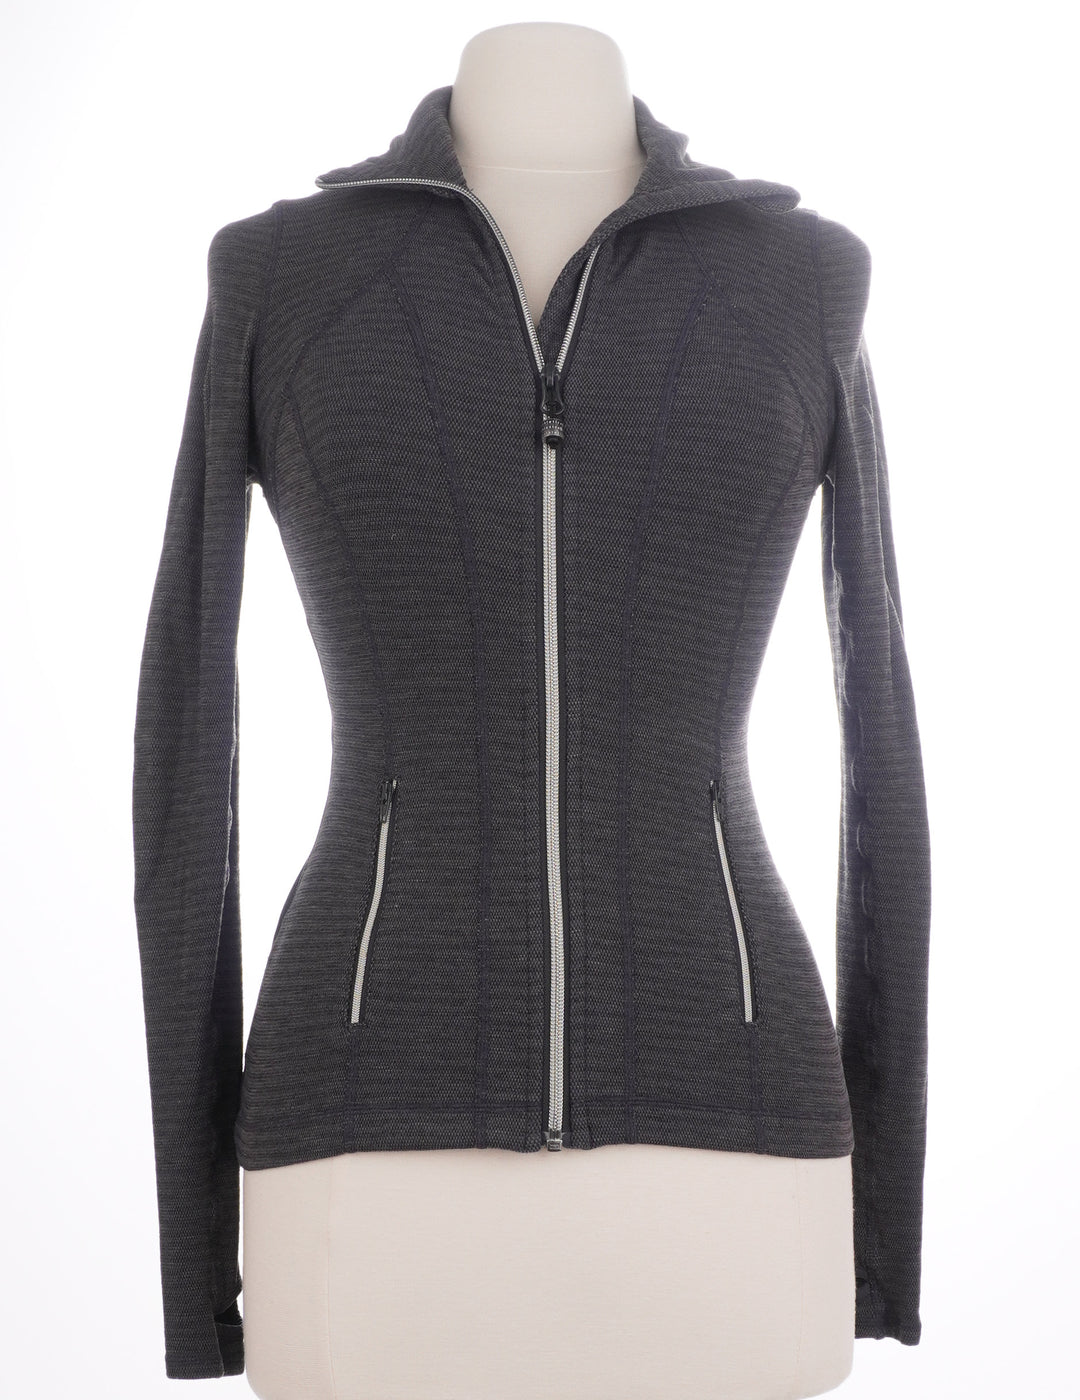 Lululemon Grey Pleated Zip Up Jacket - Size XX-Small - Skorzie